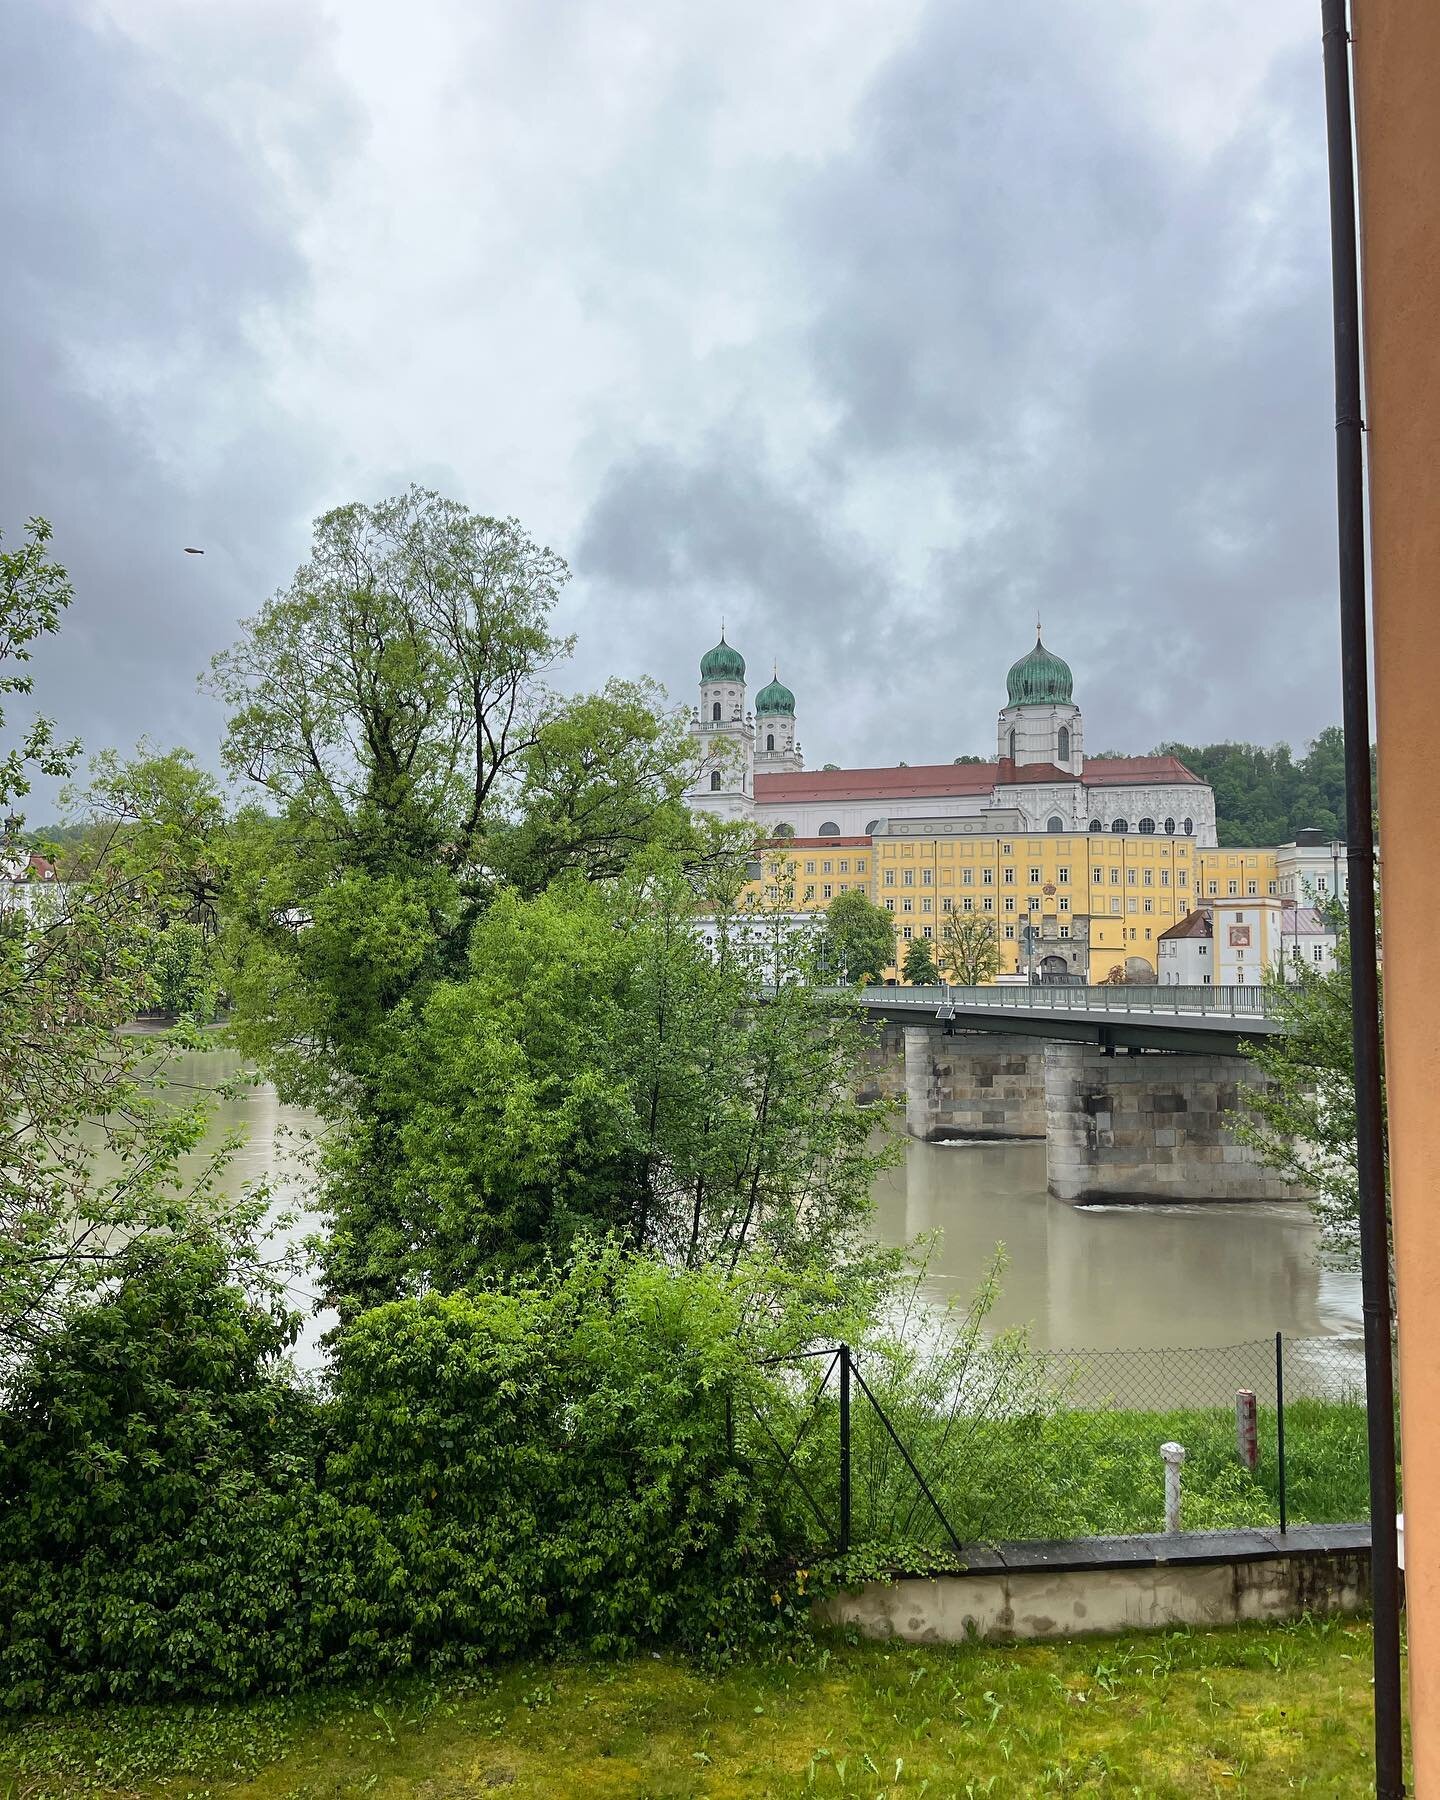 Einen tollen Ausblick auf den Passauer Dom haben wir vom Innenhof der Mariahilfstra&szlig;e 2😊 
#wgppassau #mariahilfstra&szlig;e2 #ausblick #innenhof #dom #aussicht #lebeninpassau #passauliebe #passauunddu #werwennnichtwir